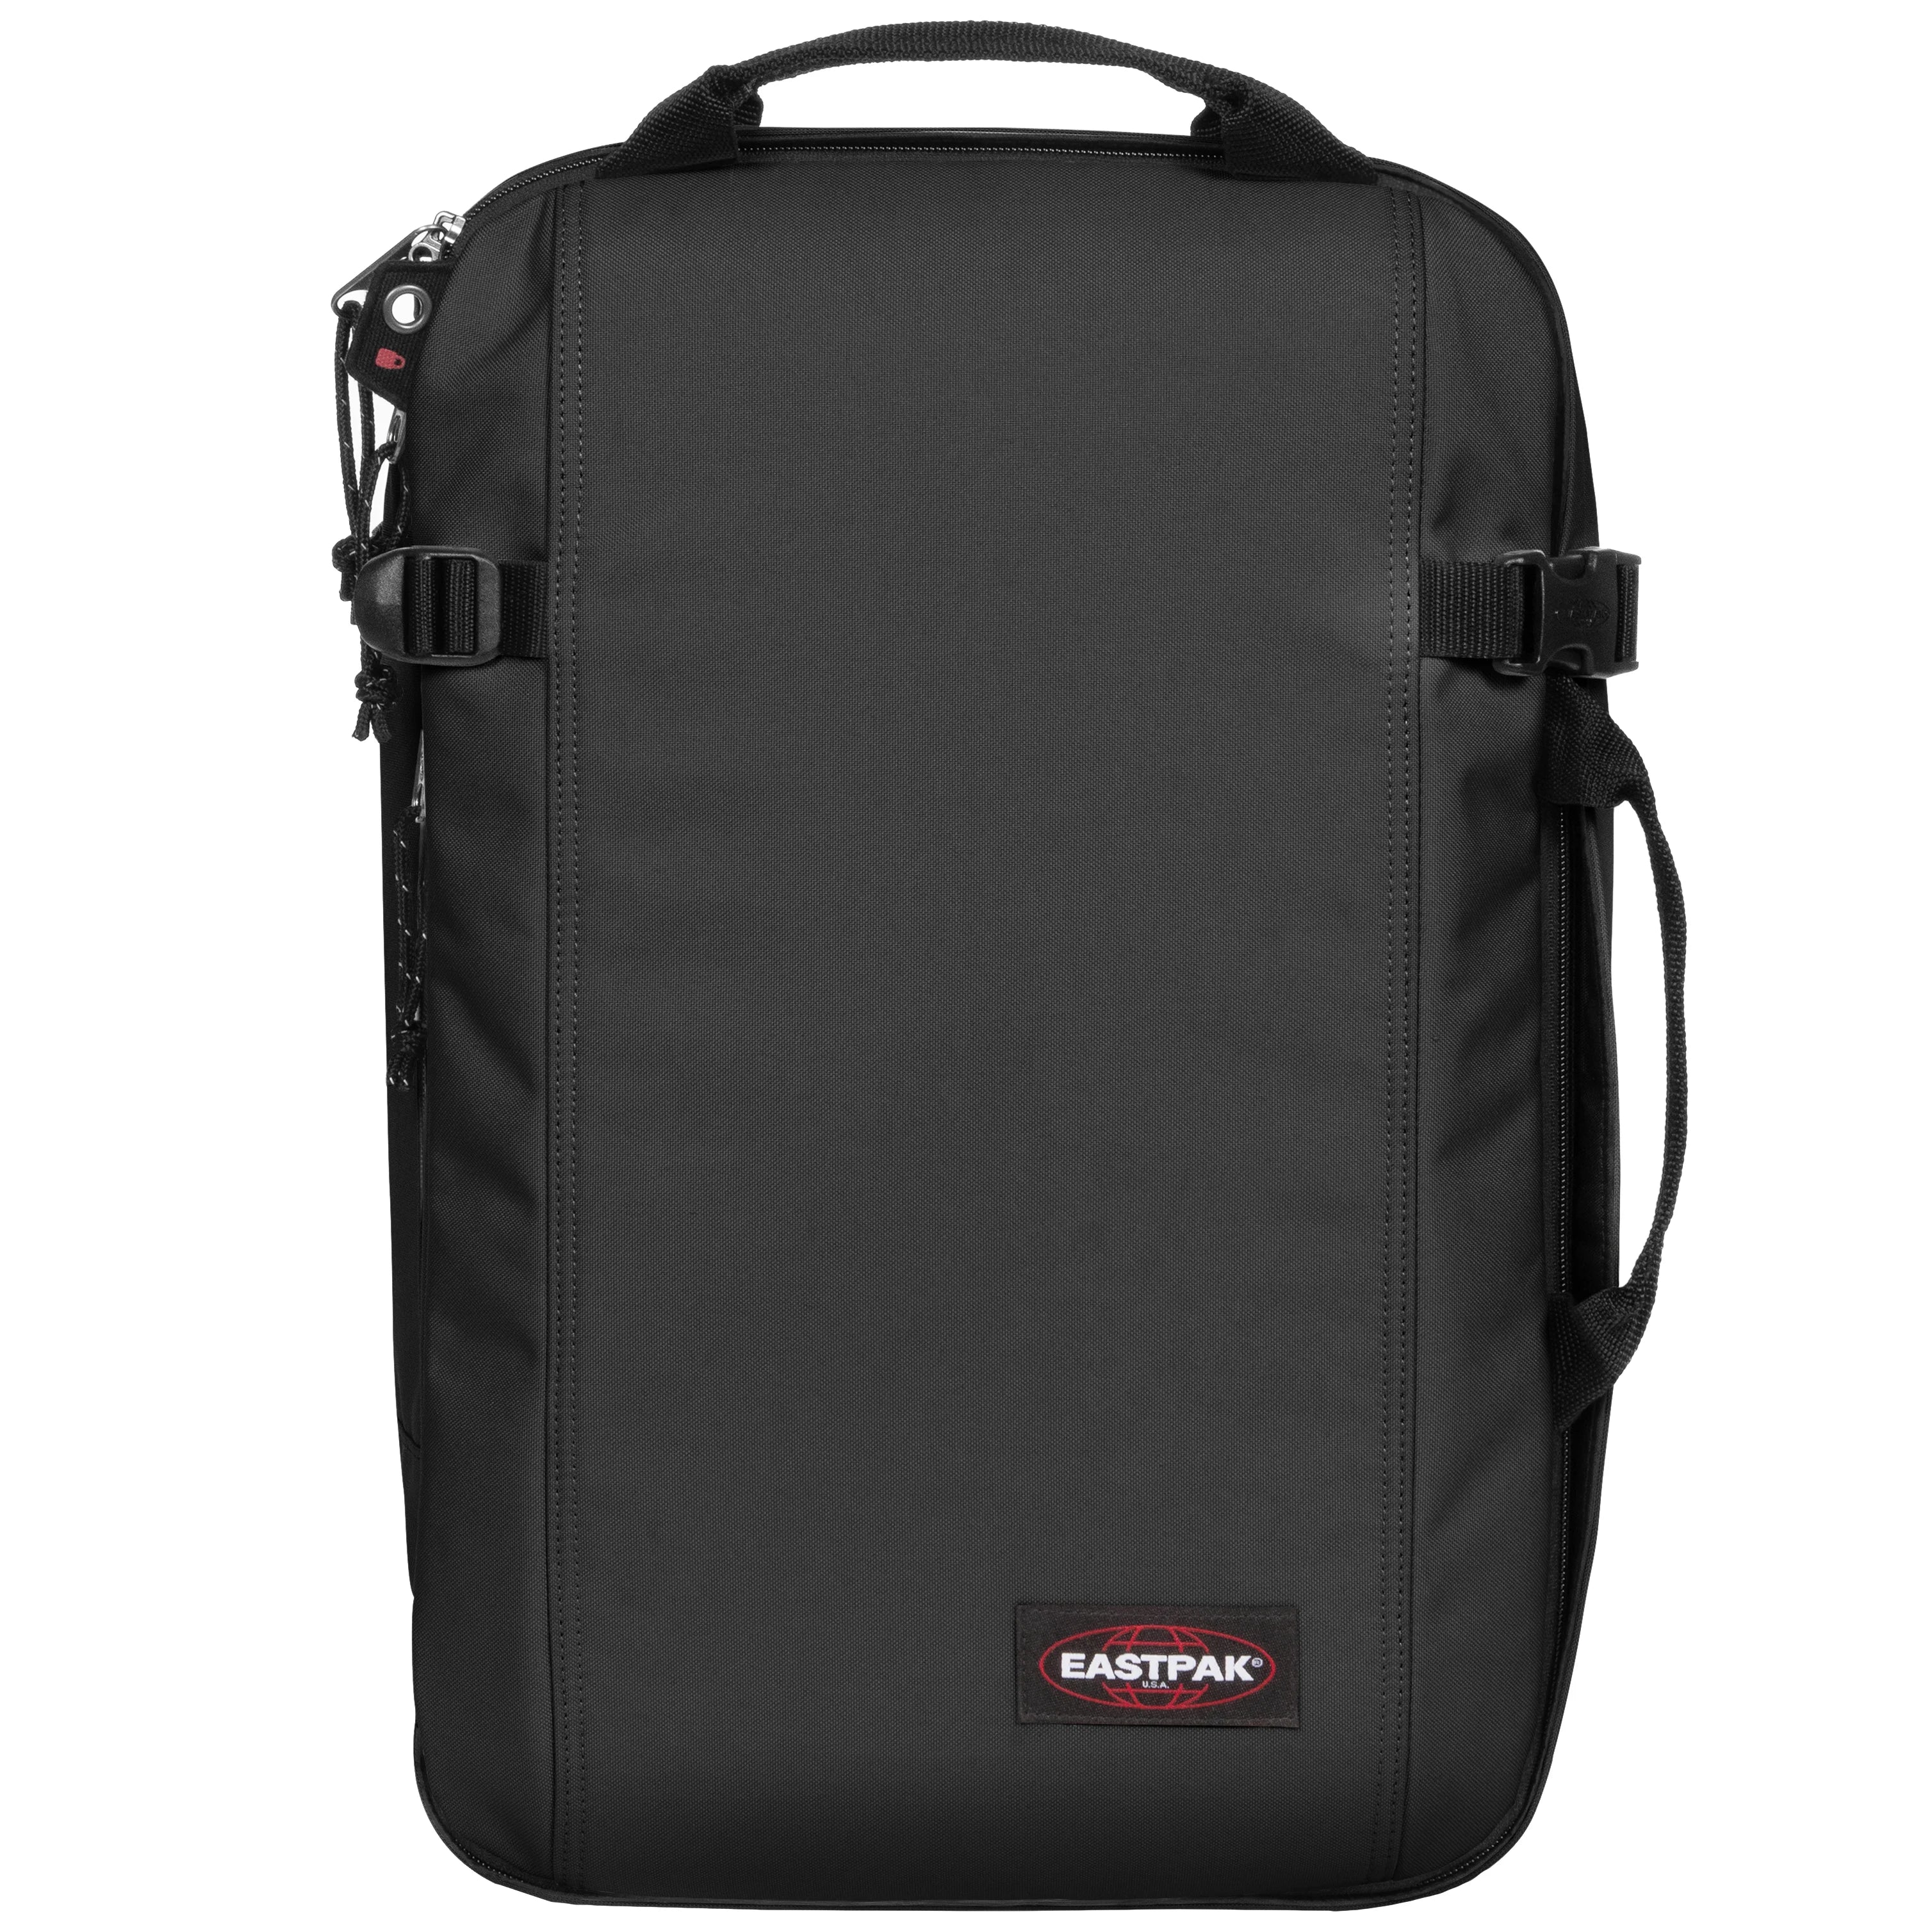 Eastpak Authentic Travel Morepack Sac à dos 50 cm - Noir